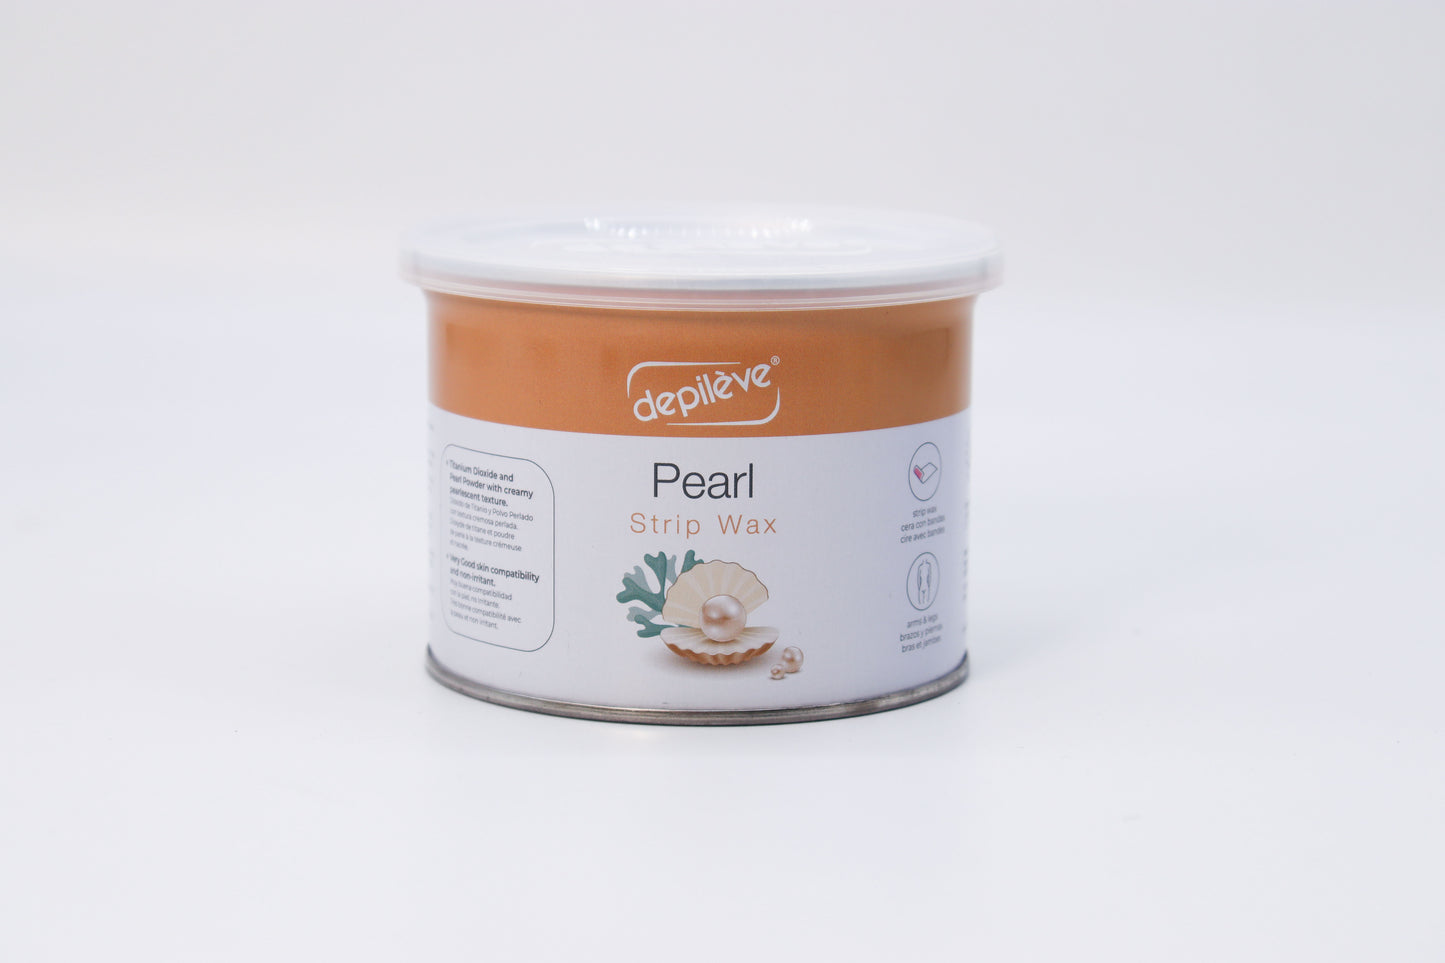 DEPILEVE ROSIN Pearl Wax 400g / Pearl wax